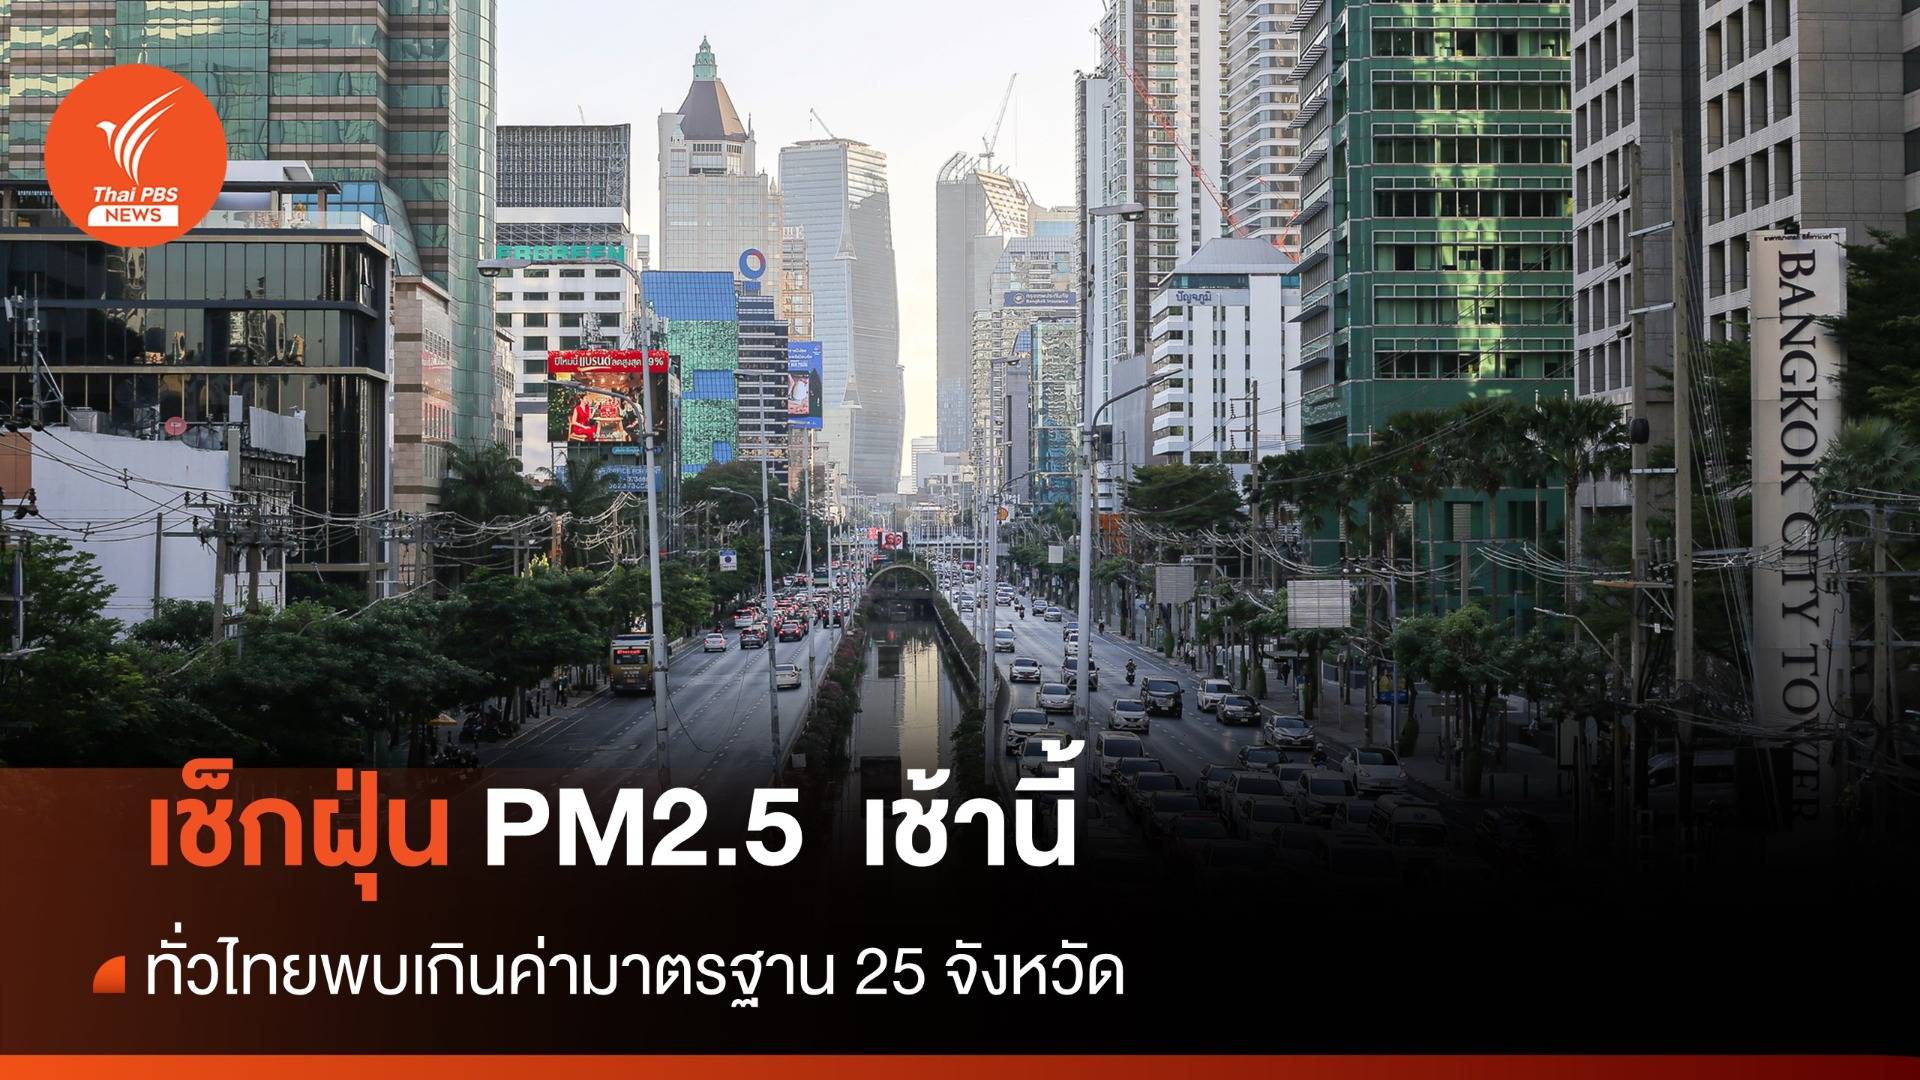 เช้านี้ ฝุ่น PM2.5  ทั่วไทยพบเกินค่ามาตรฐาน 25 จังหวัด - 5 อันดับ กทม.ค่าฝุ่นสูงสุด 